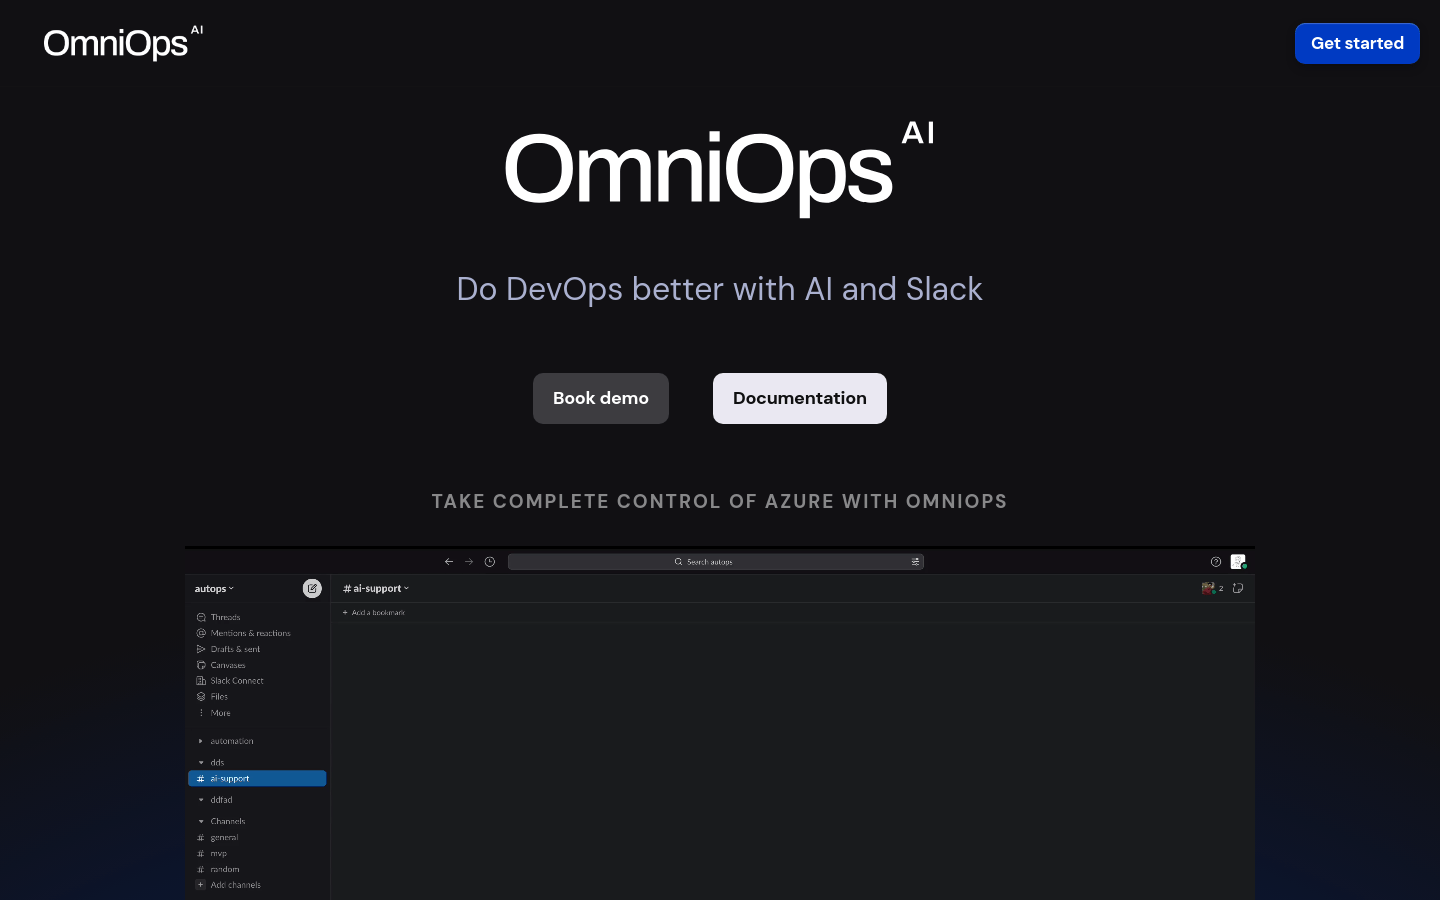 OmniOps